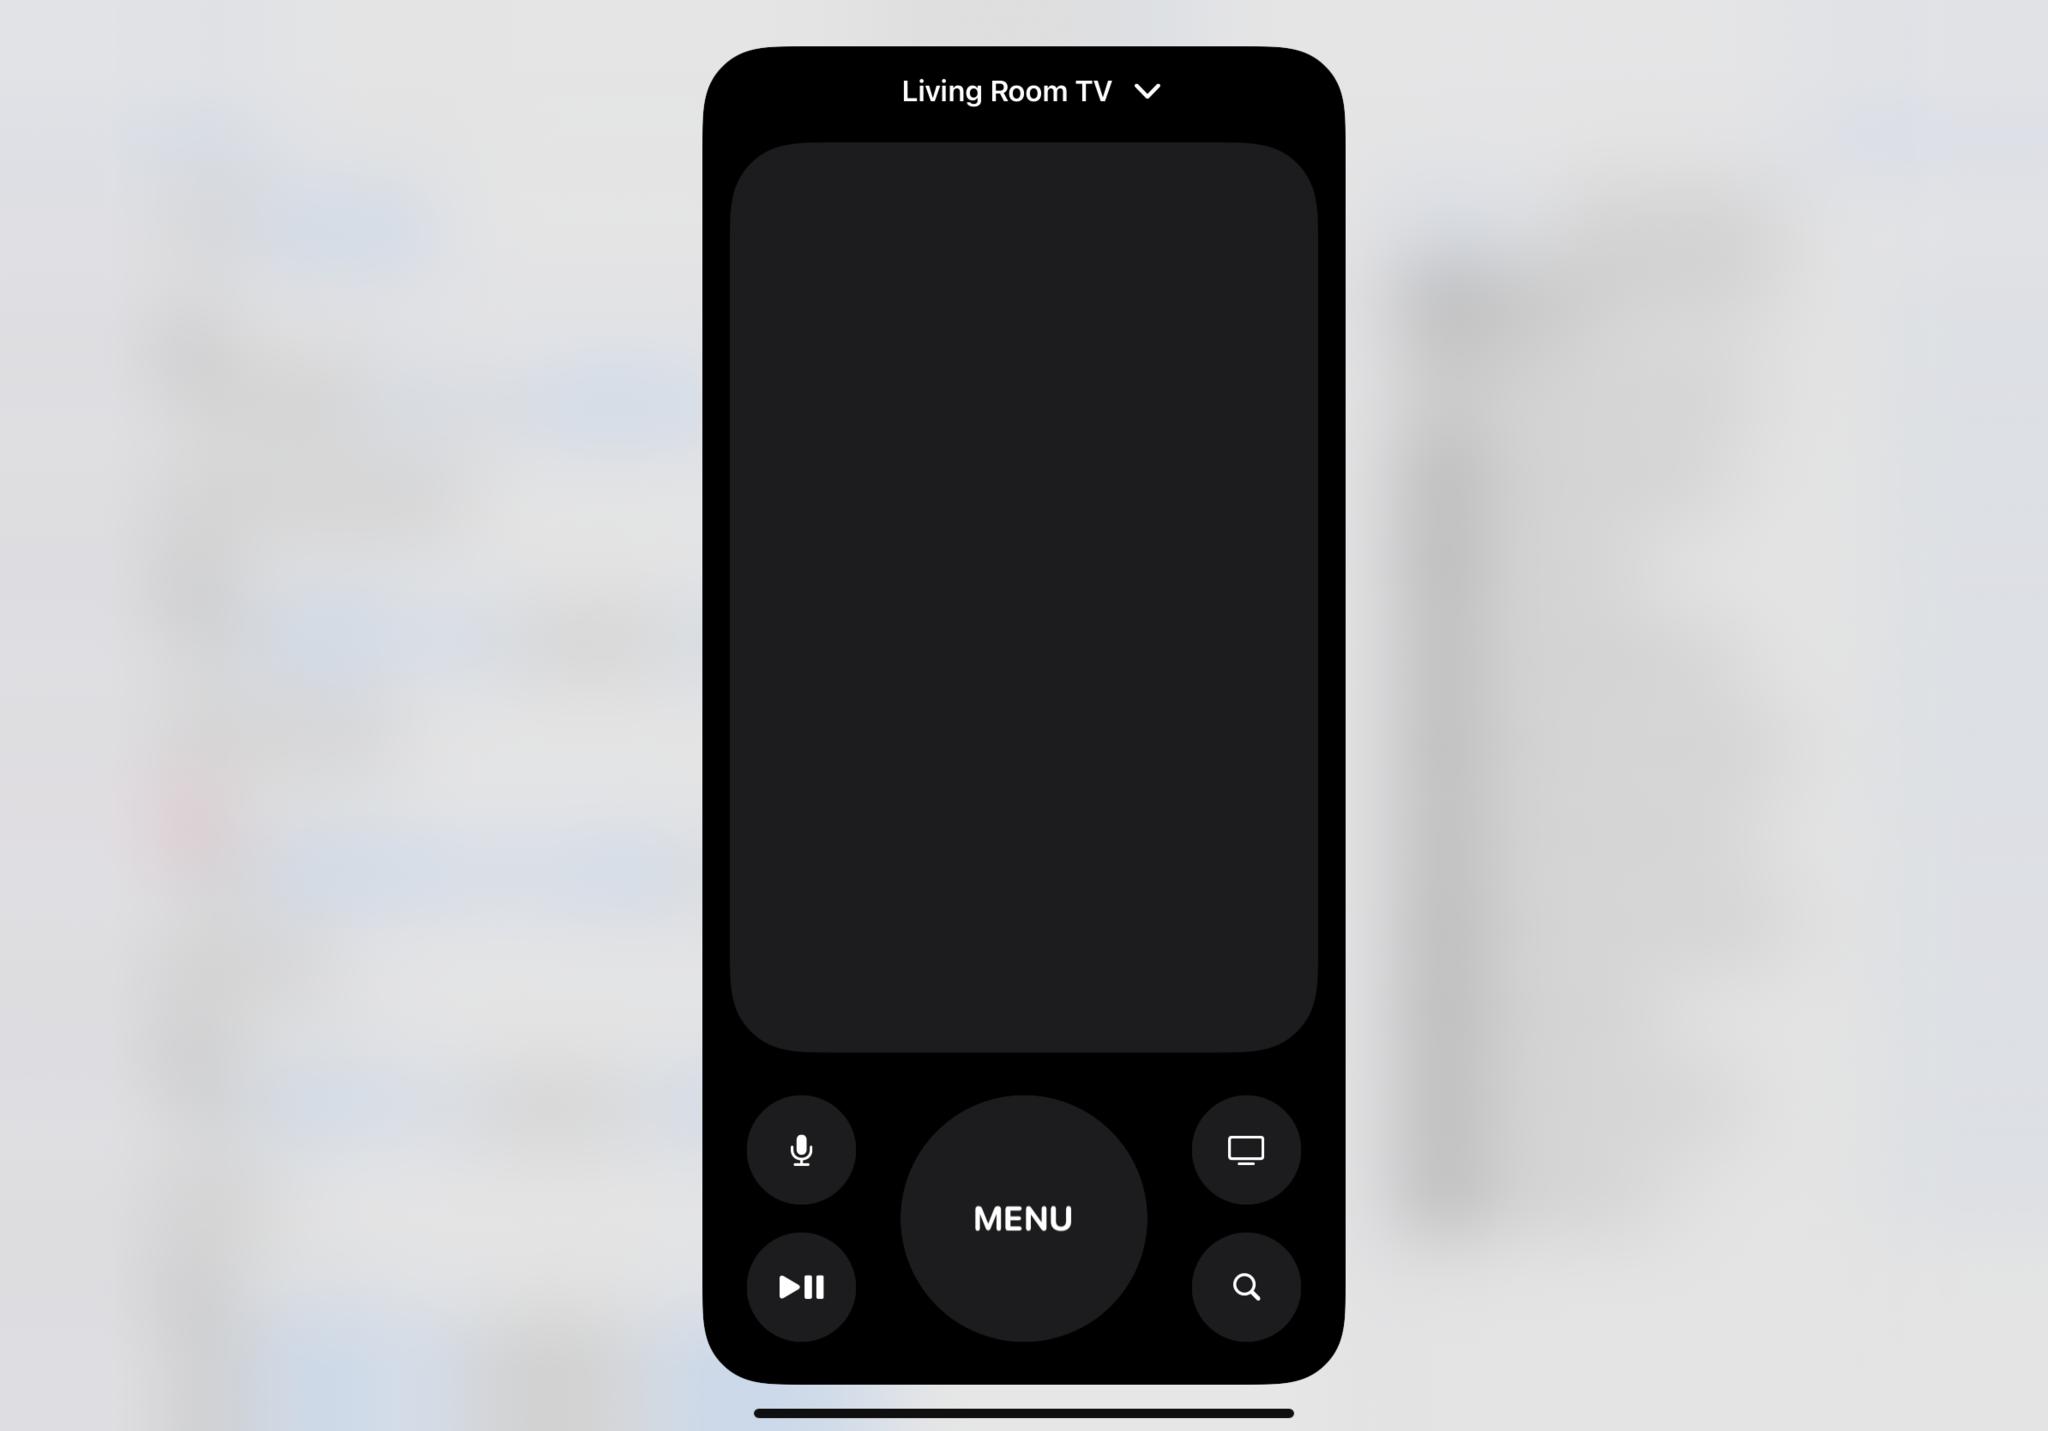 Снимок экрана: пульт Apple TV Remote отображается на экране после активации с помощью ярлыков.